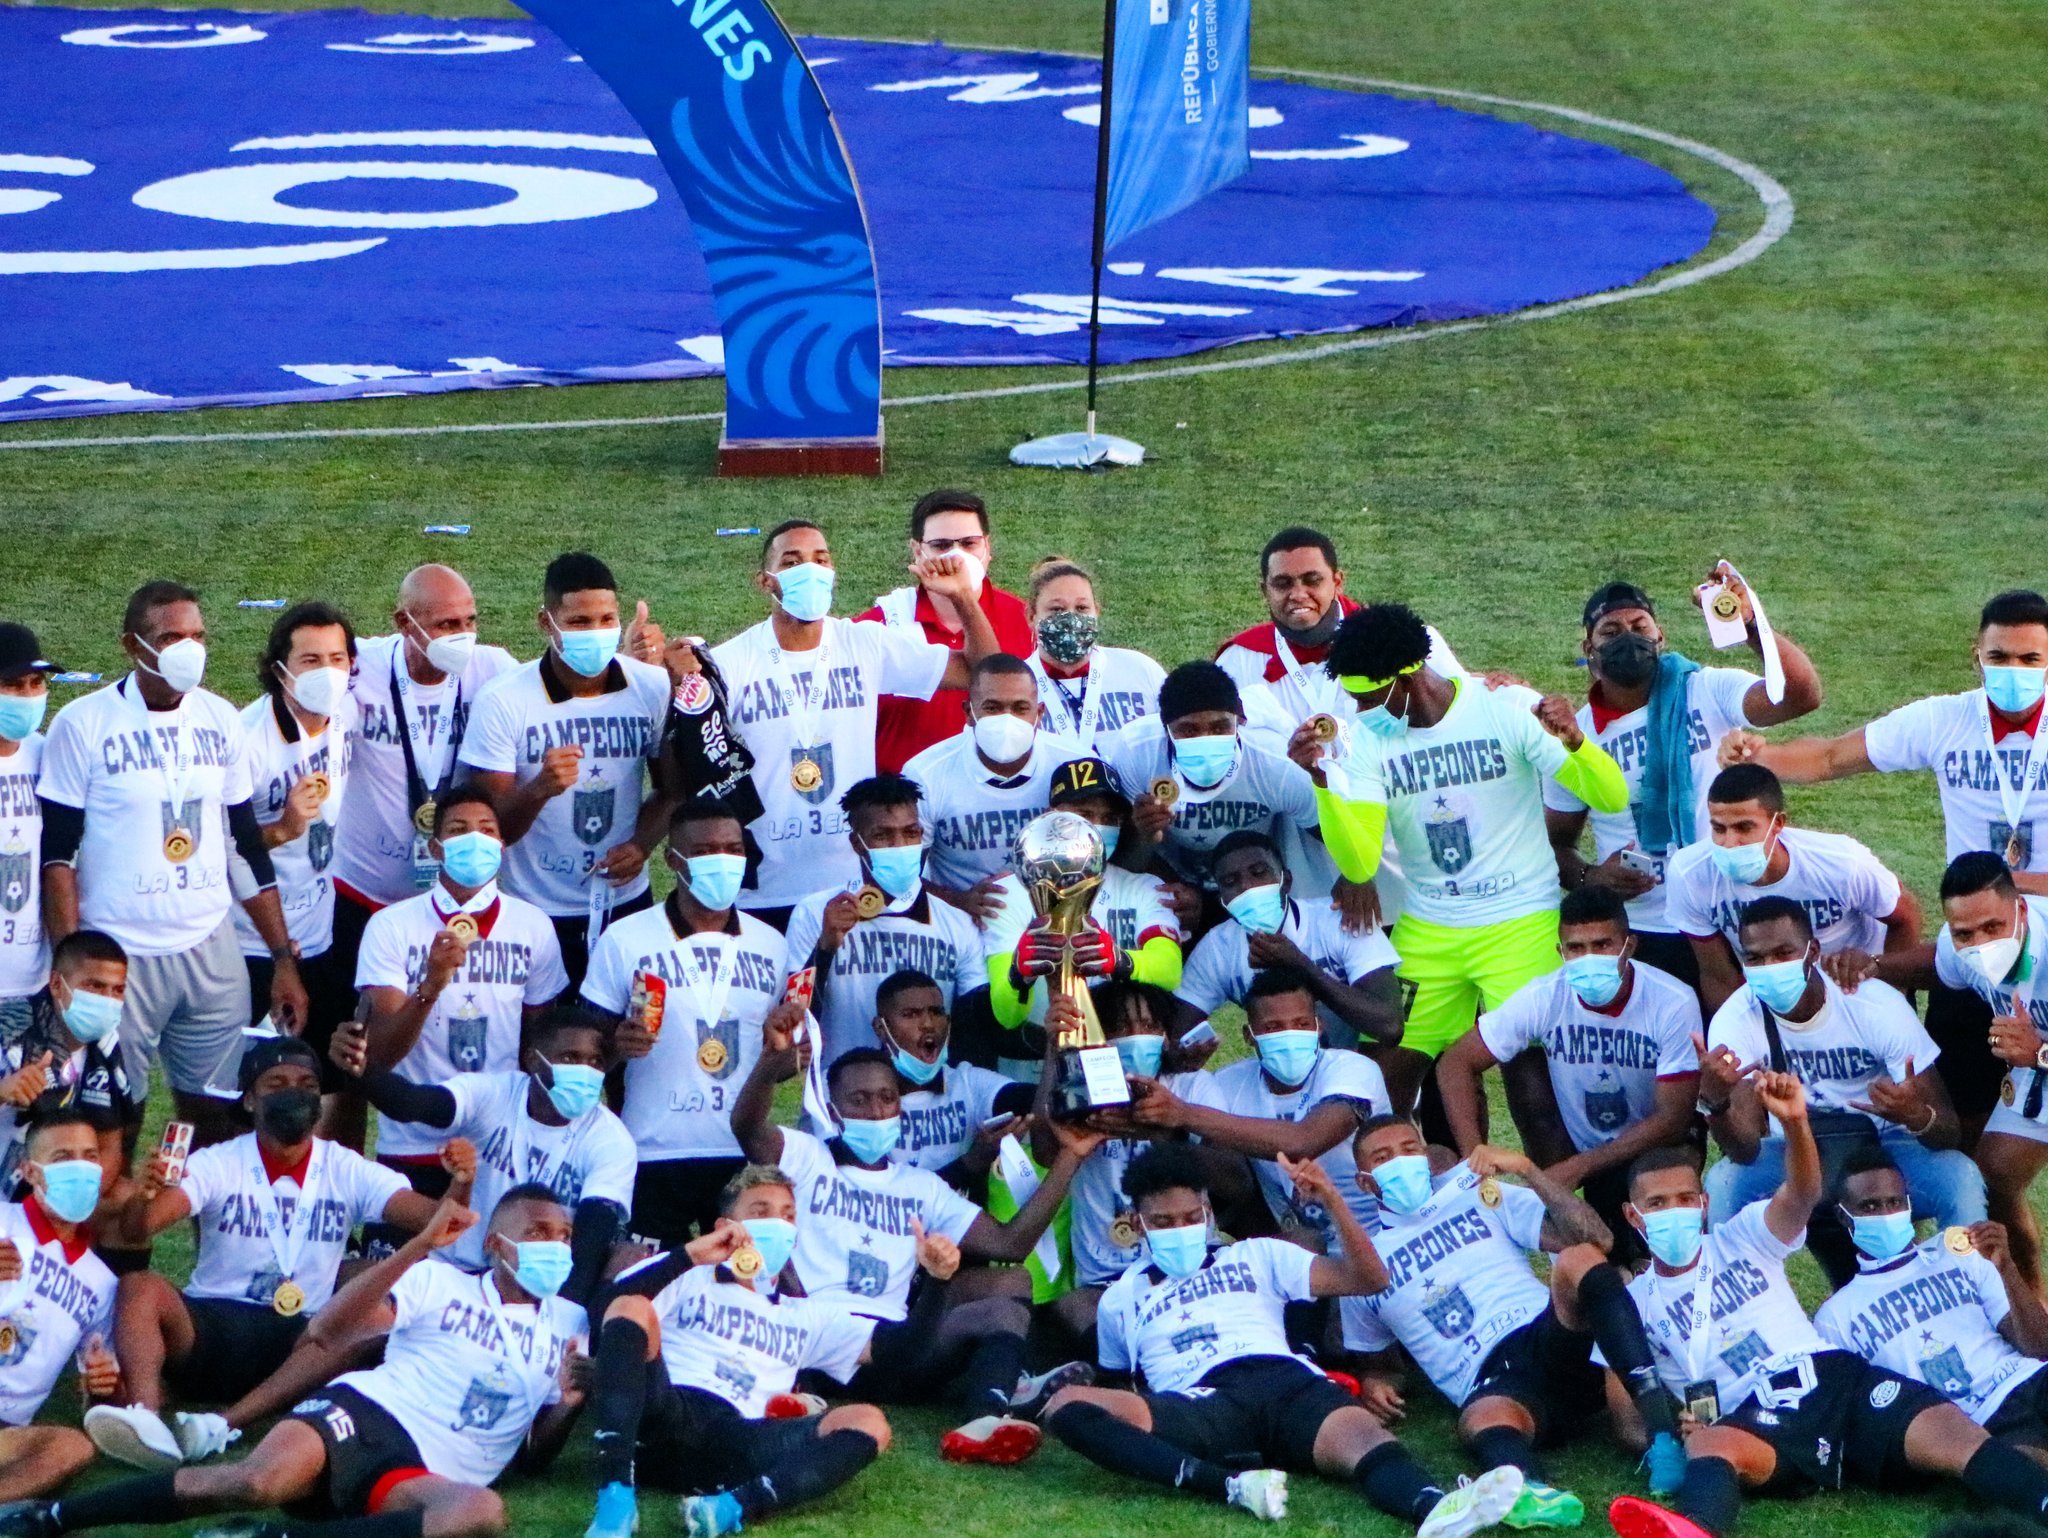 Club Atlético Independiente on X: Nuestra alineación titular, nuestros  Vikingos juveniles listos para enfrentar el Derbi de La Chorrera.  @liga_prom J4️⃣ @CAIPanama 🆚 @sanfrafc_pa ✍🏾: Vamos por la conquista del  Oeste. 🏟️ #